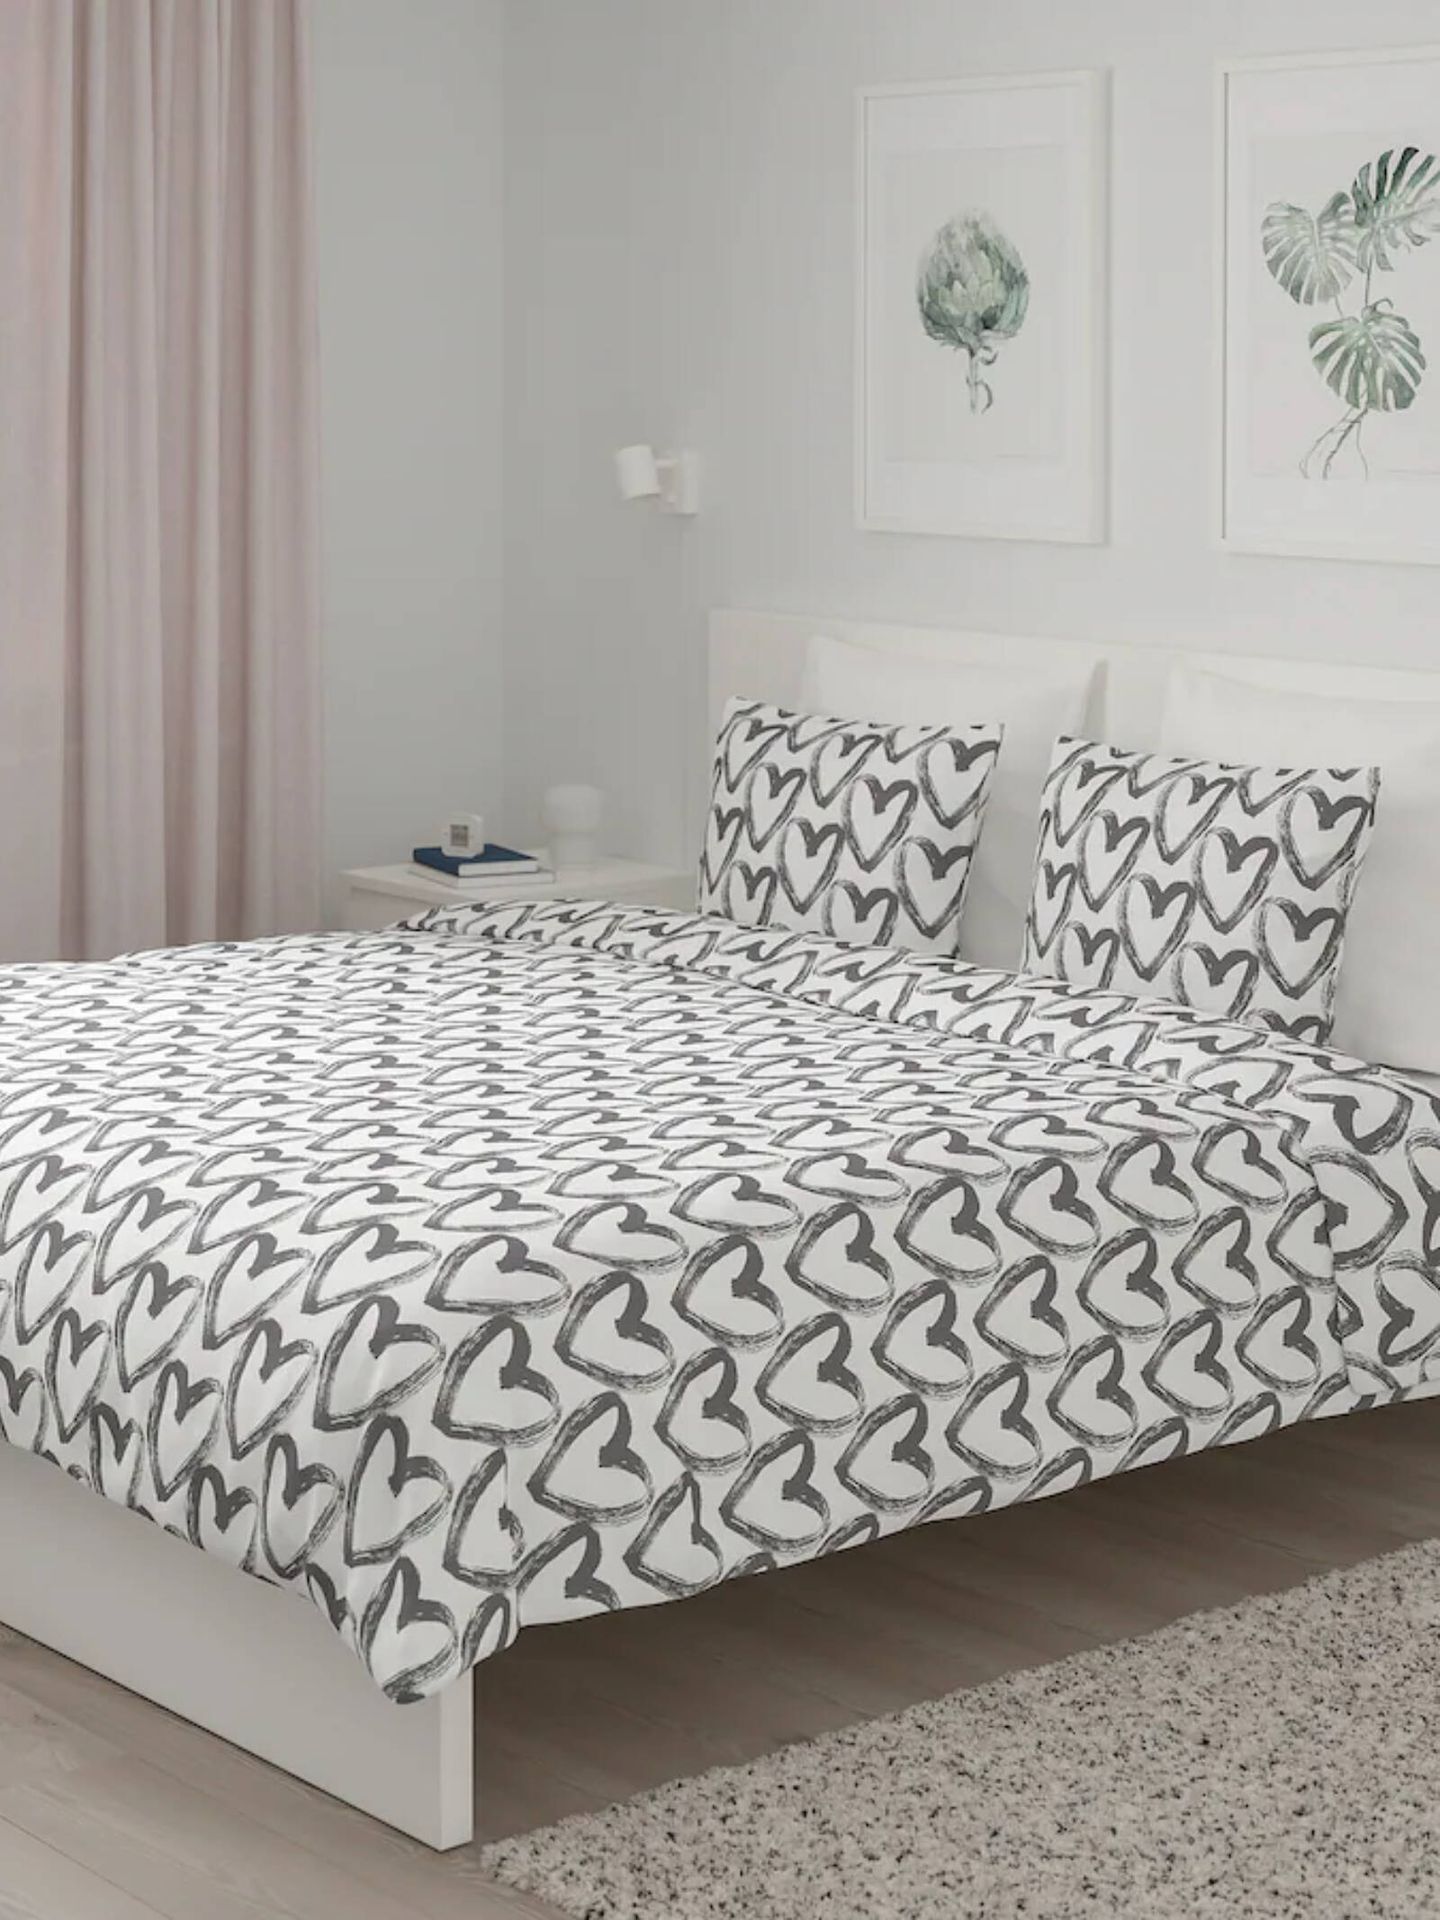 Actualiza tu dormitorio con Ikea para empezar el año estrenando. (Cortesía/Ikea)